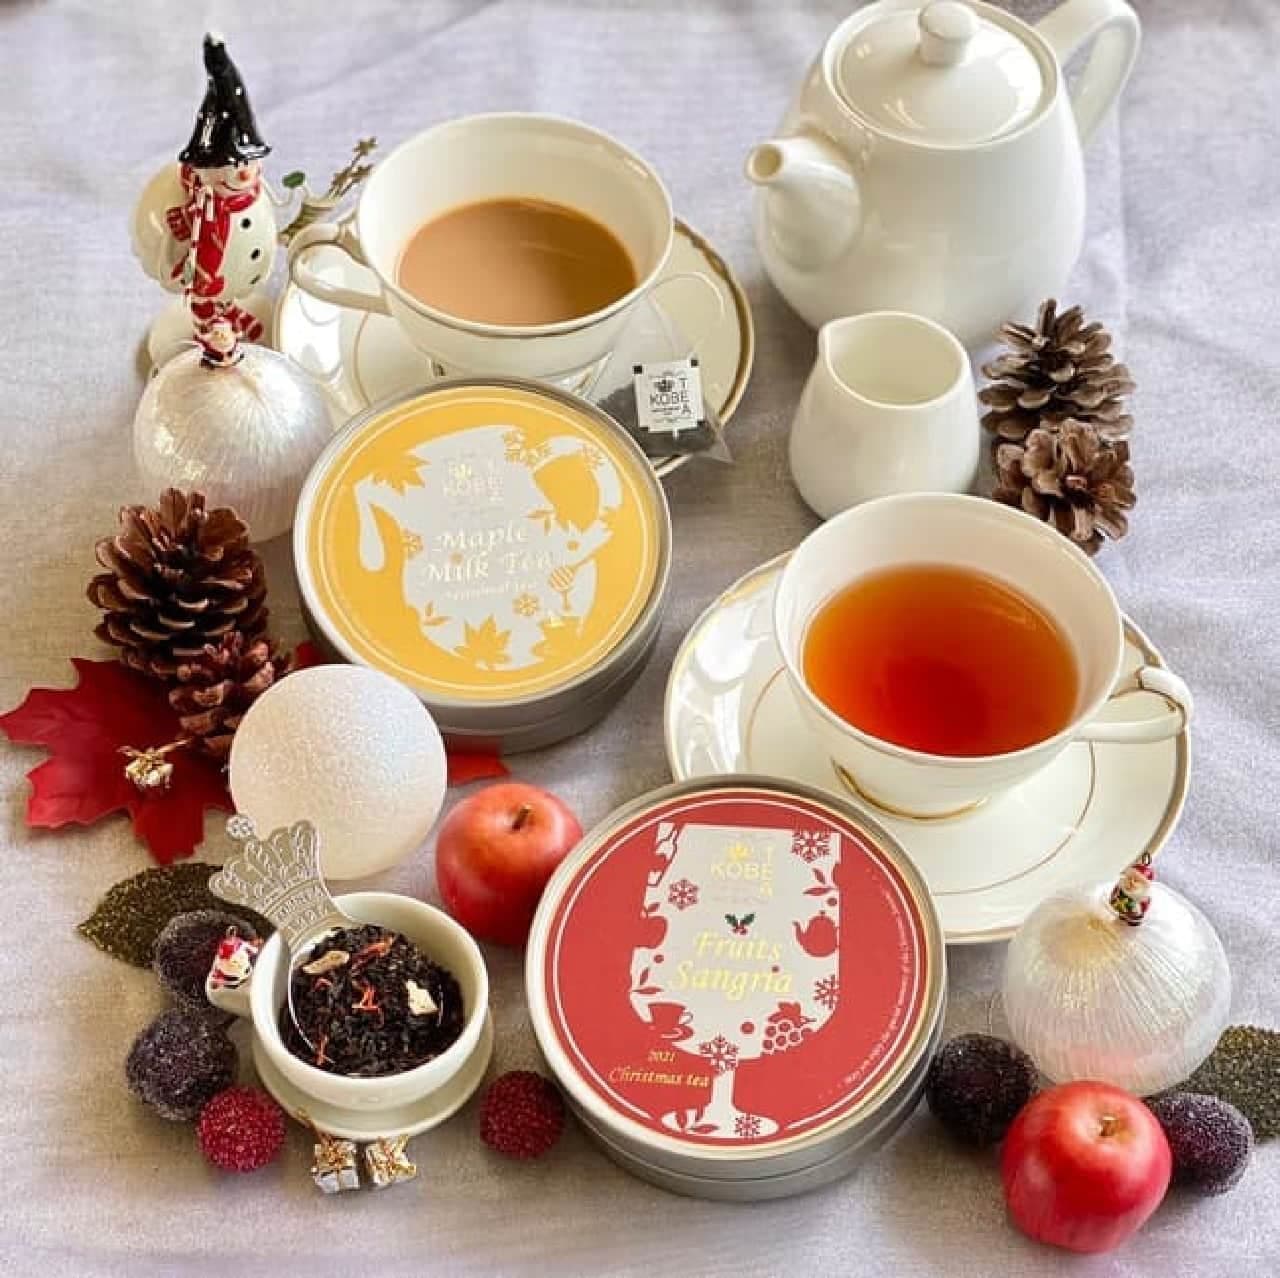 神戸紅茶のクリスマスティー「フルーツサングリア」と、冬のシーズナルティー「メープルミルクティー」